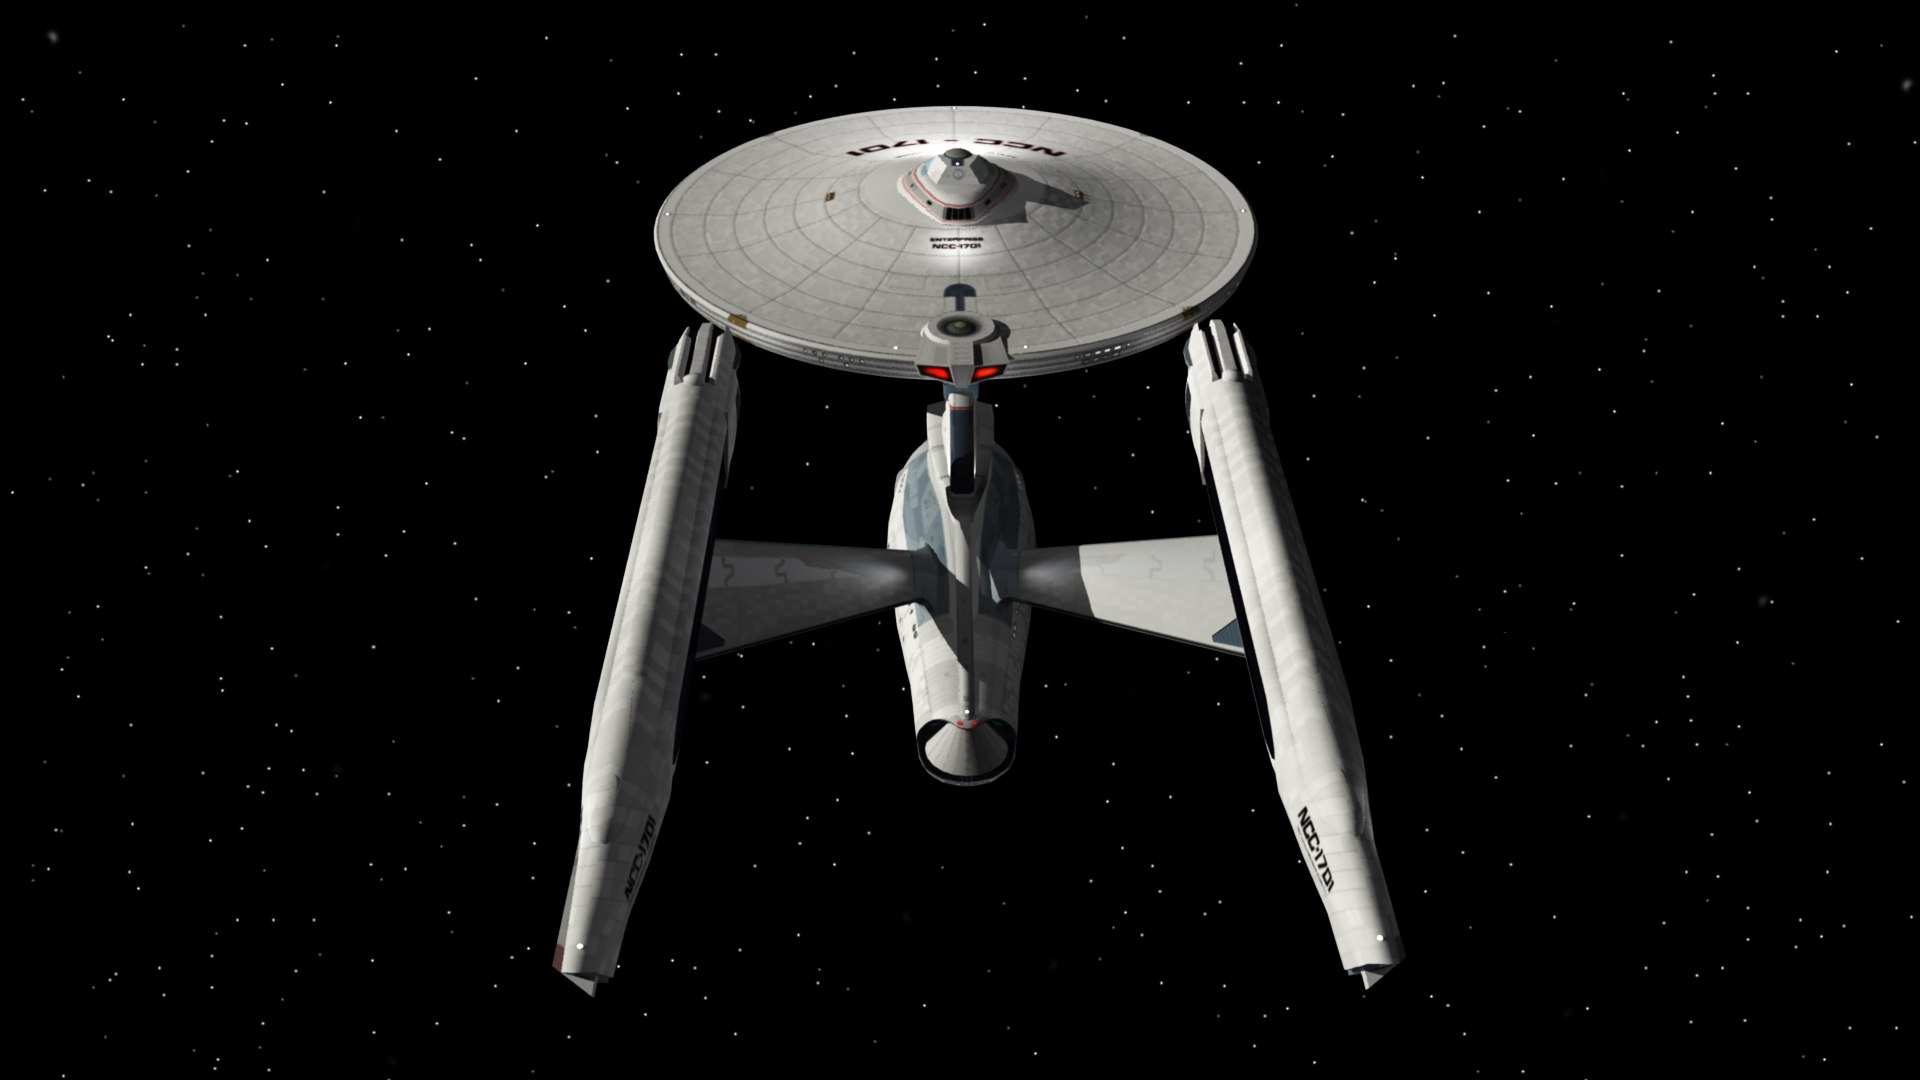 3D USS Enterprise 80s movie era - includes battle damage - TurboSquid ...